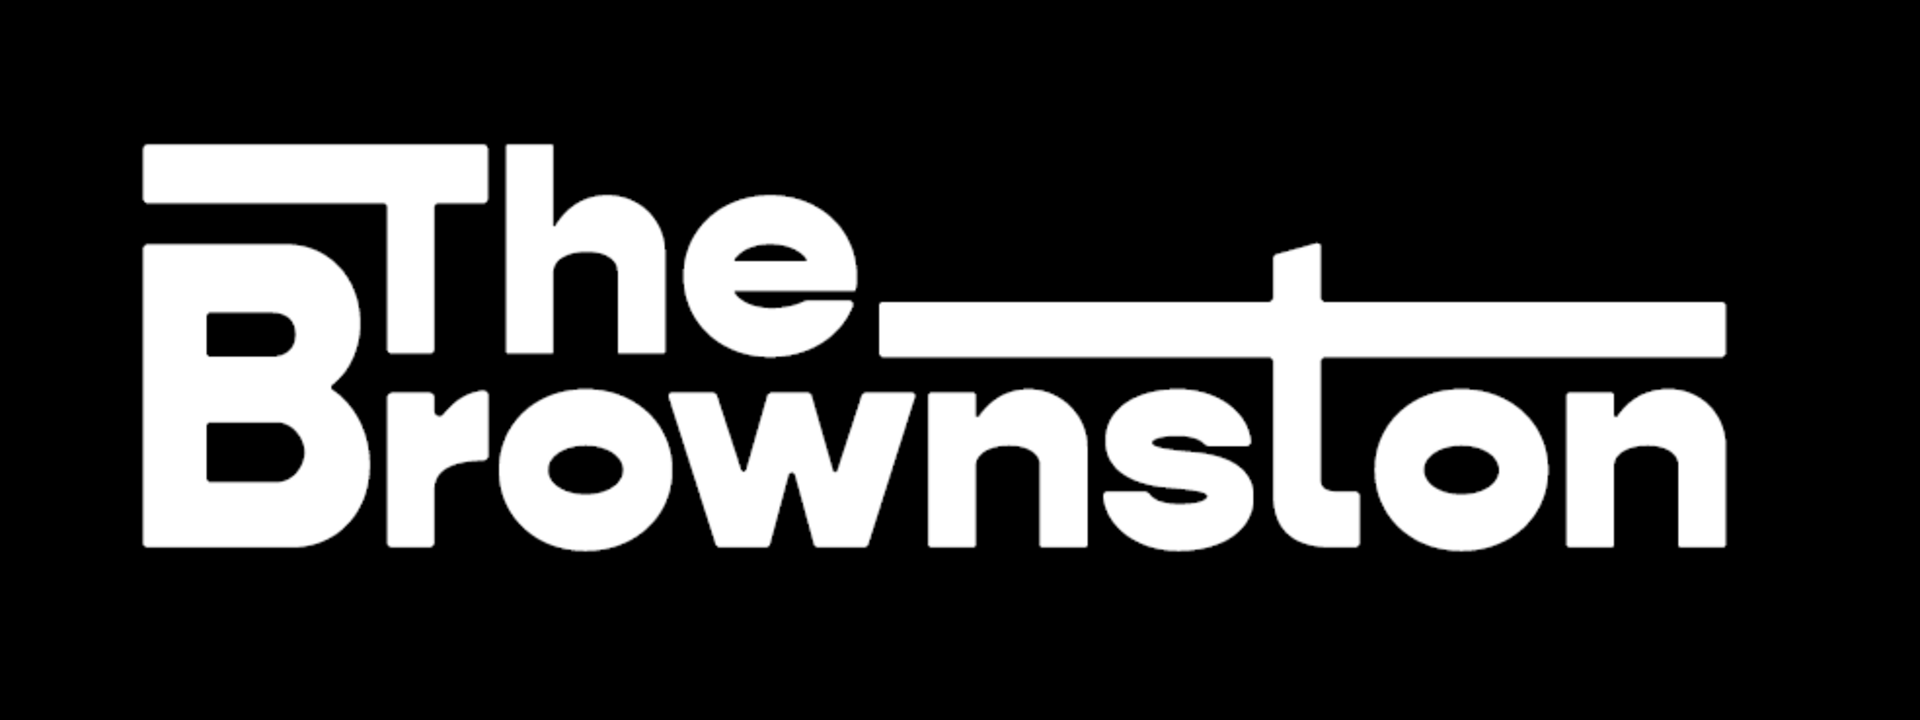 Brownston logo.png